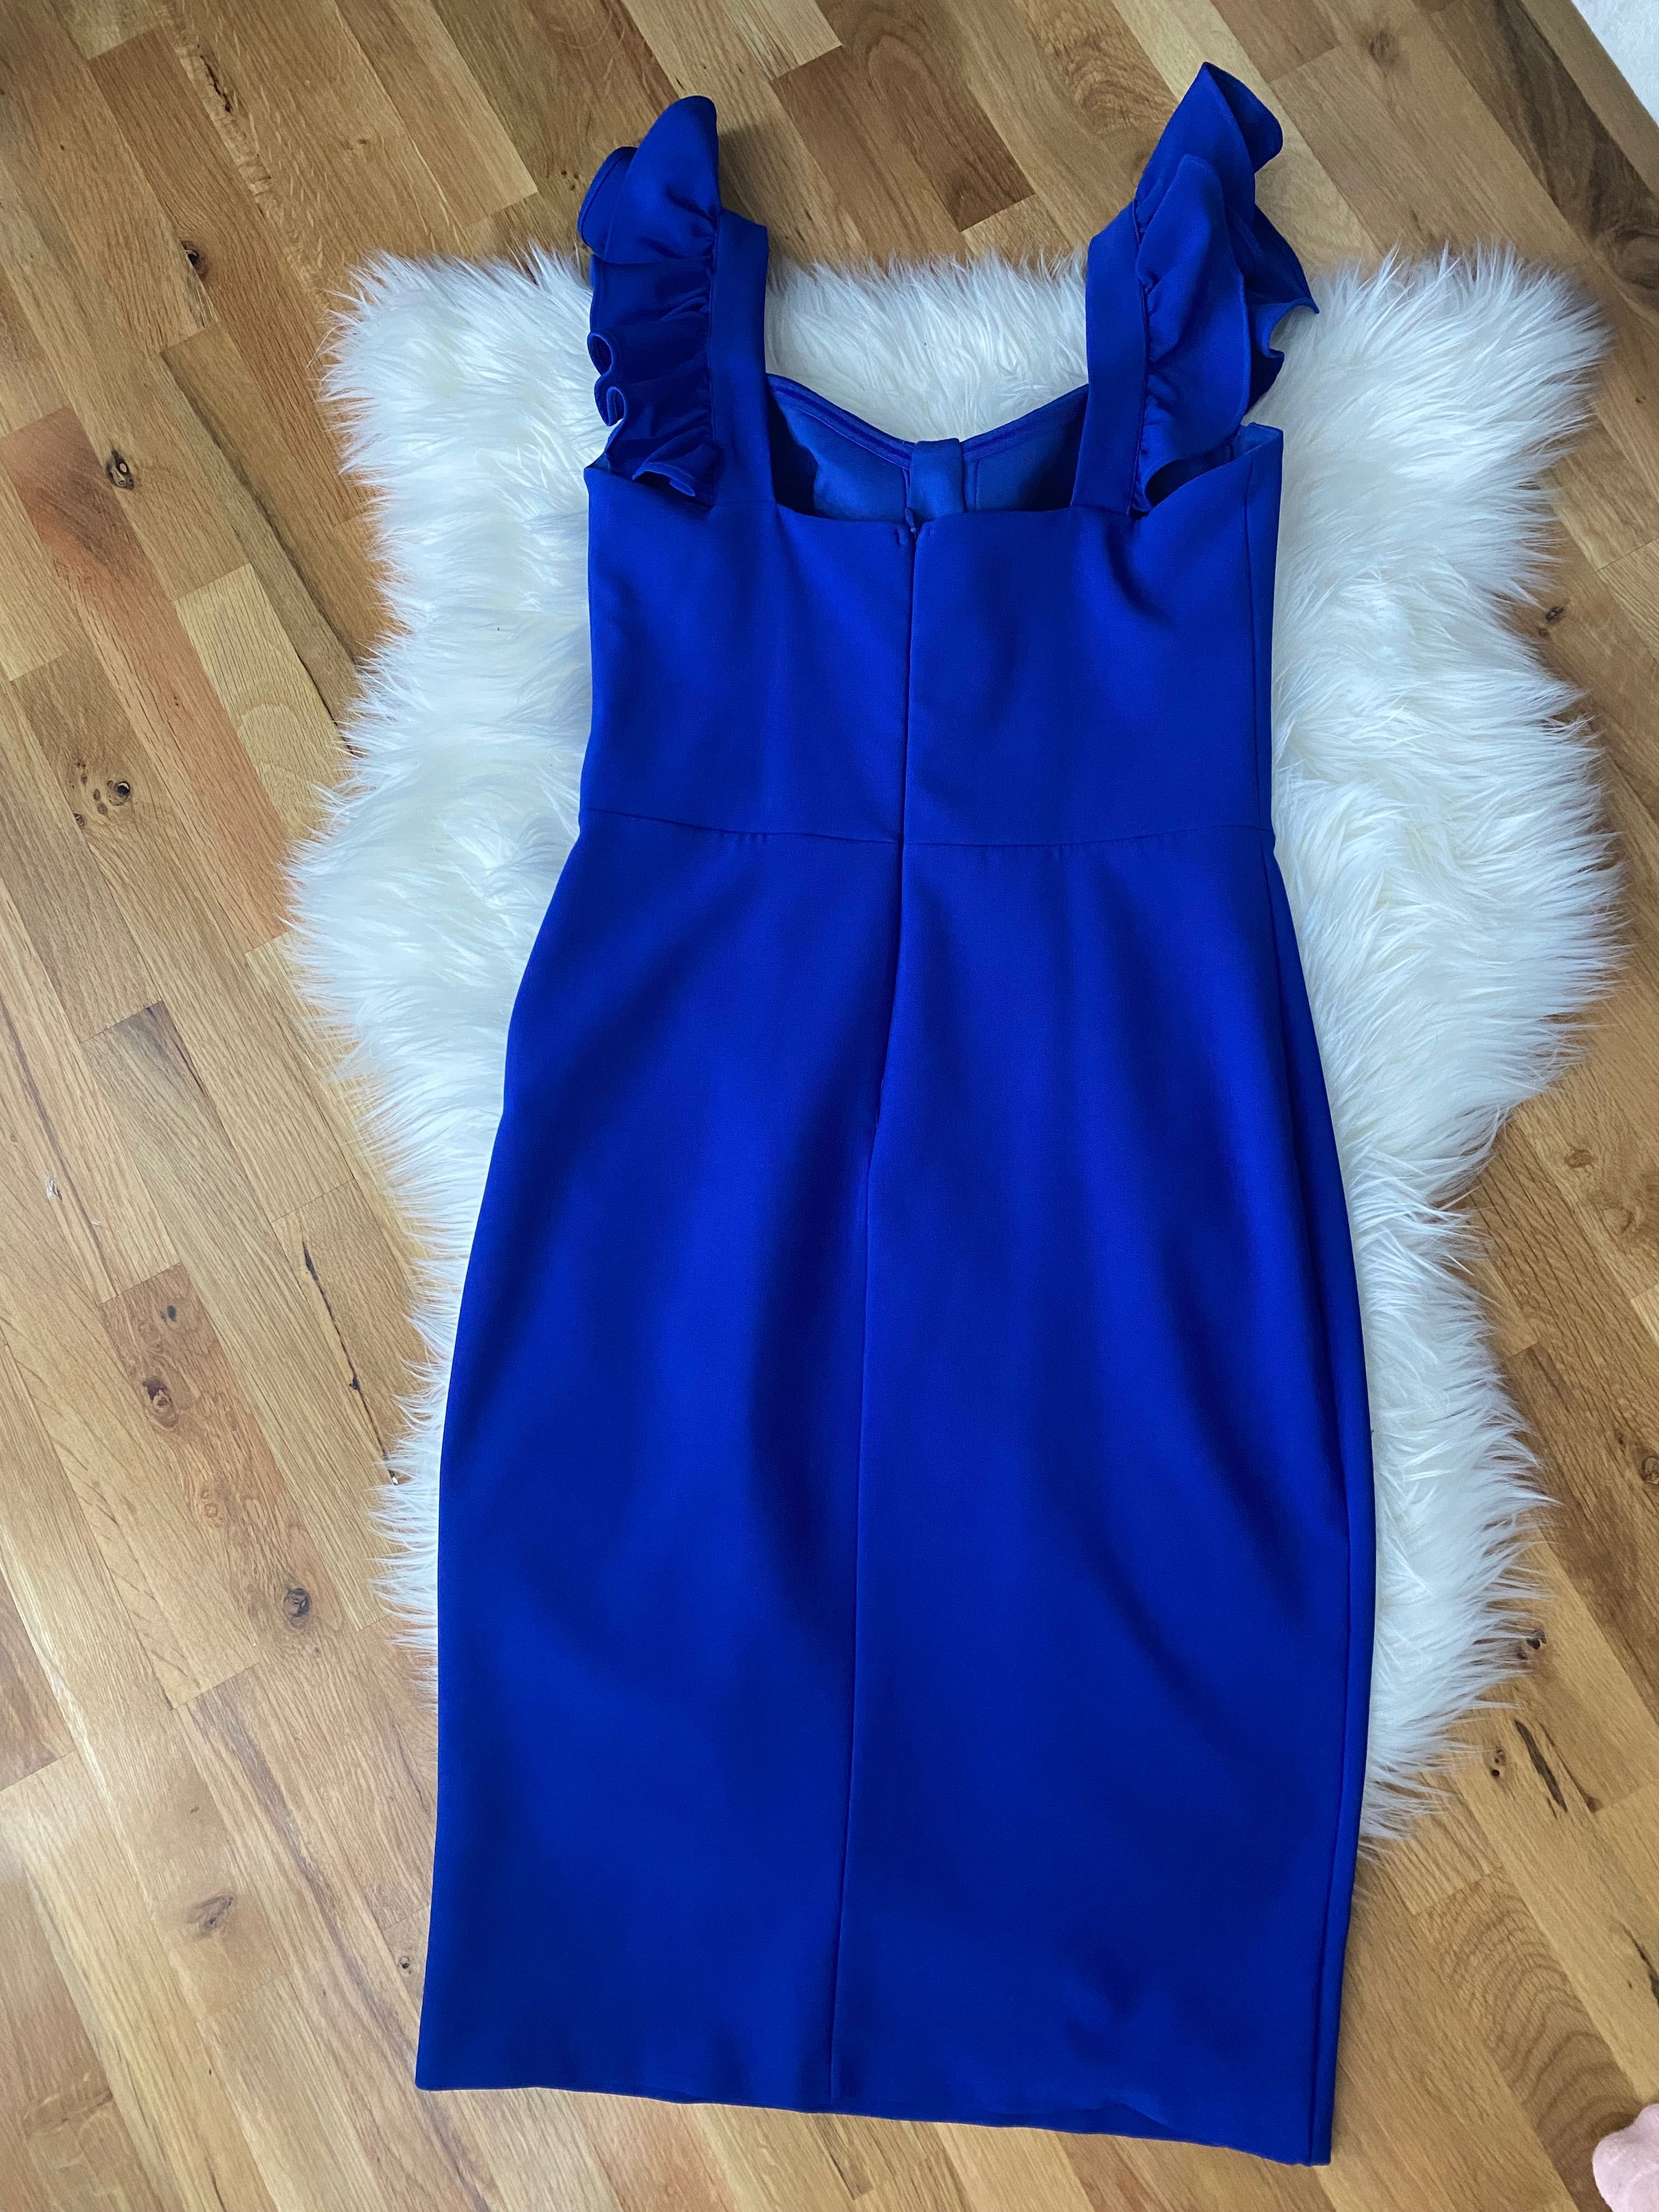 НОВО! Дамска официална рокля турски син цвят размер 40